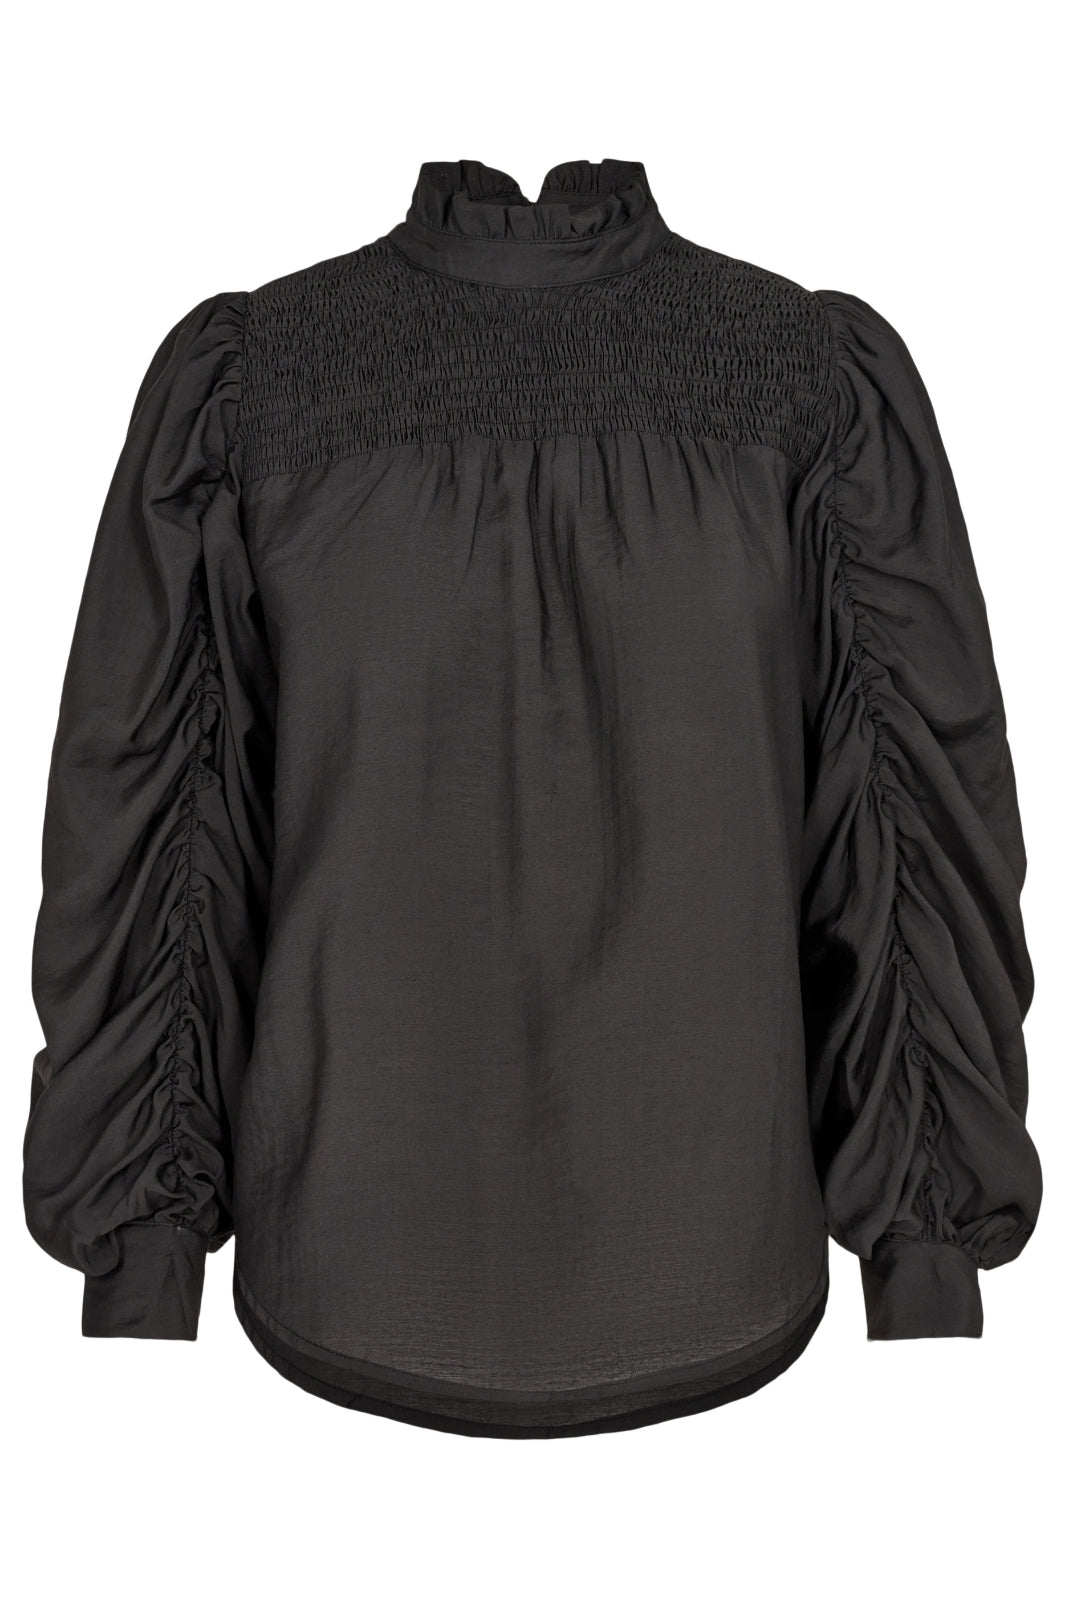 Forudbestilling - Co´couture - Callum Drape Sleeve Blouse - Black (November) Skjorter 